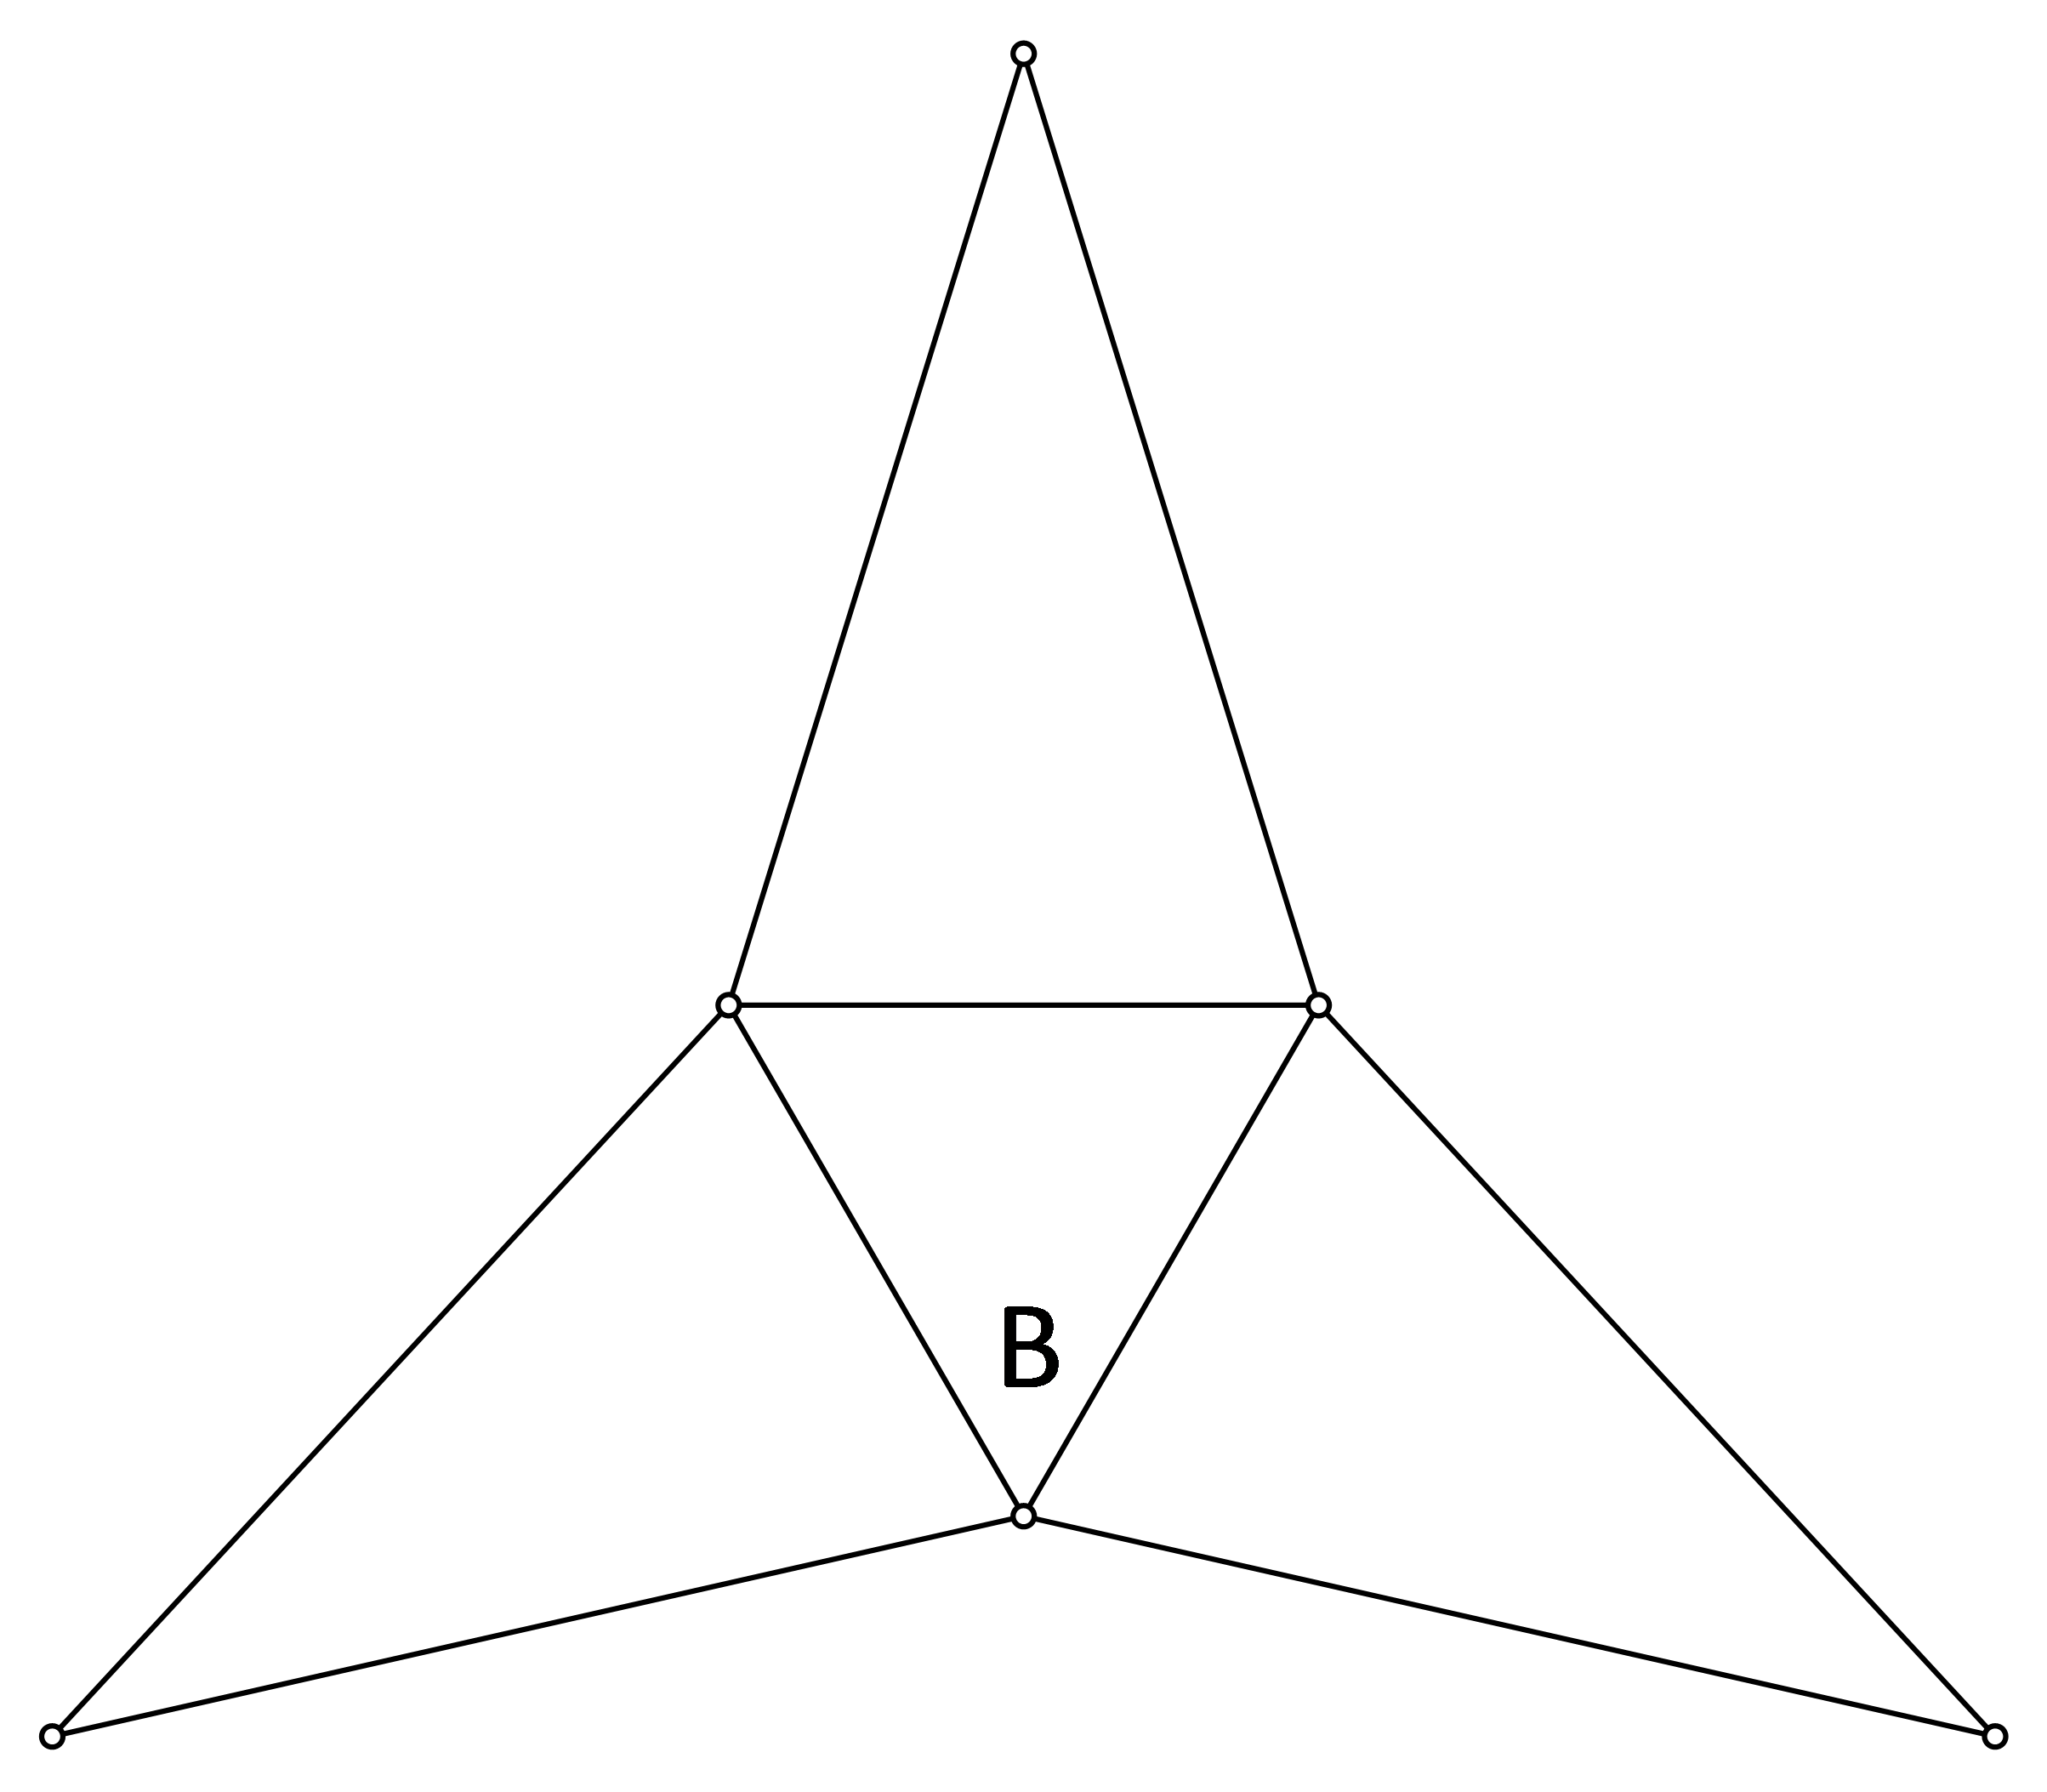 Slika moguće mreže pravilne trostrane piramide.